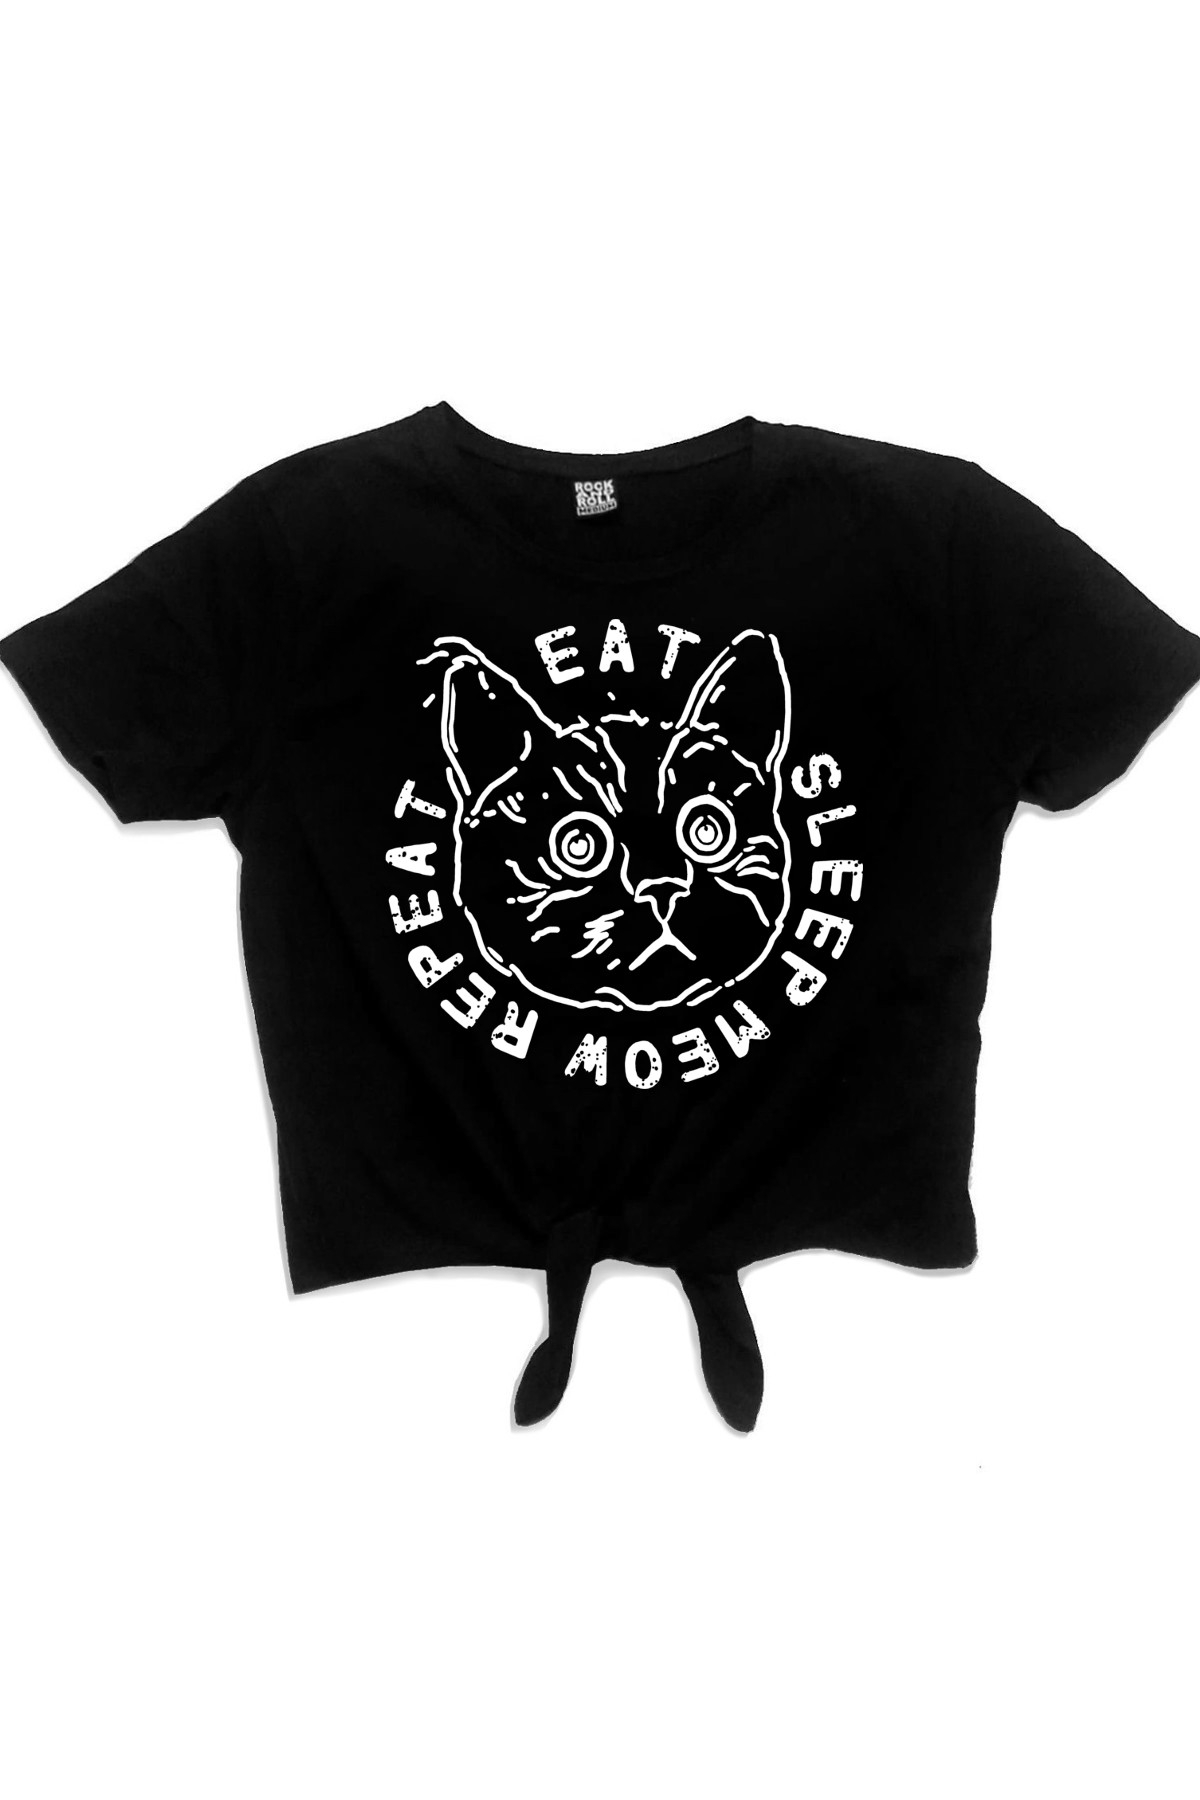 Şaşkın Kedi Siyah Kısa, Kesik Bağlı Crop Top Kadın T-shirt